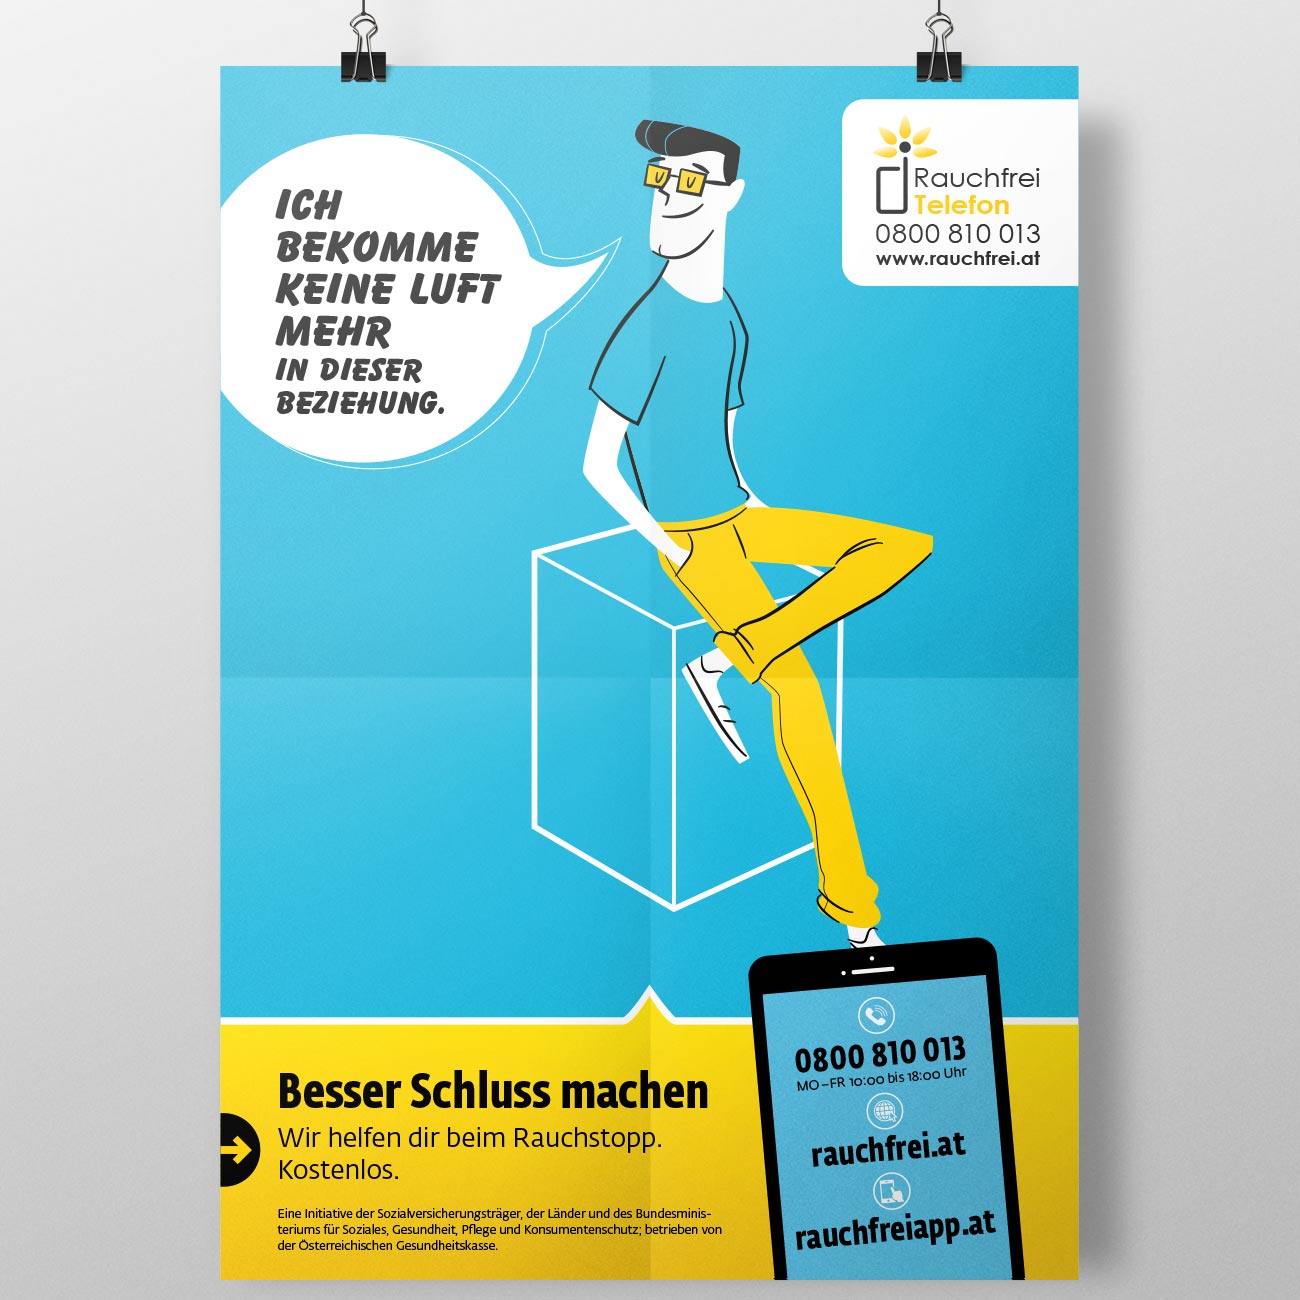 Corporate Design und Illustration für das Rauchfreitelefon der Österreichischen Gesundheitskasse von studio mishugge – Jugend